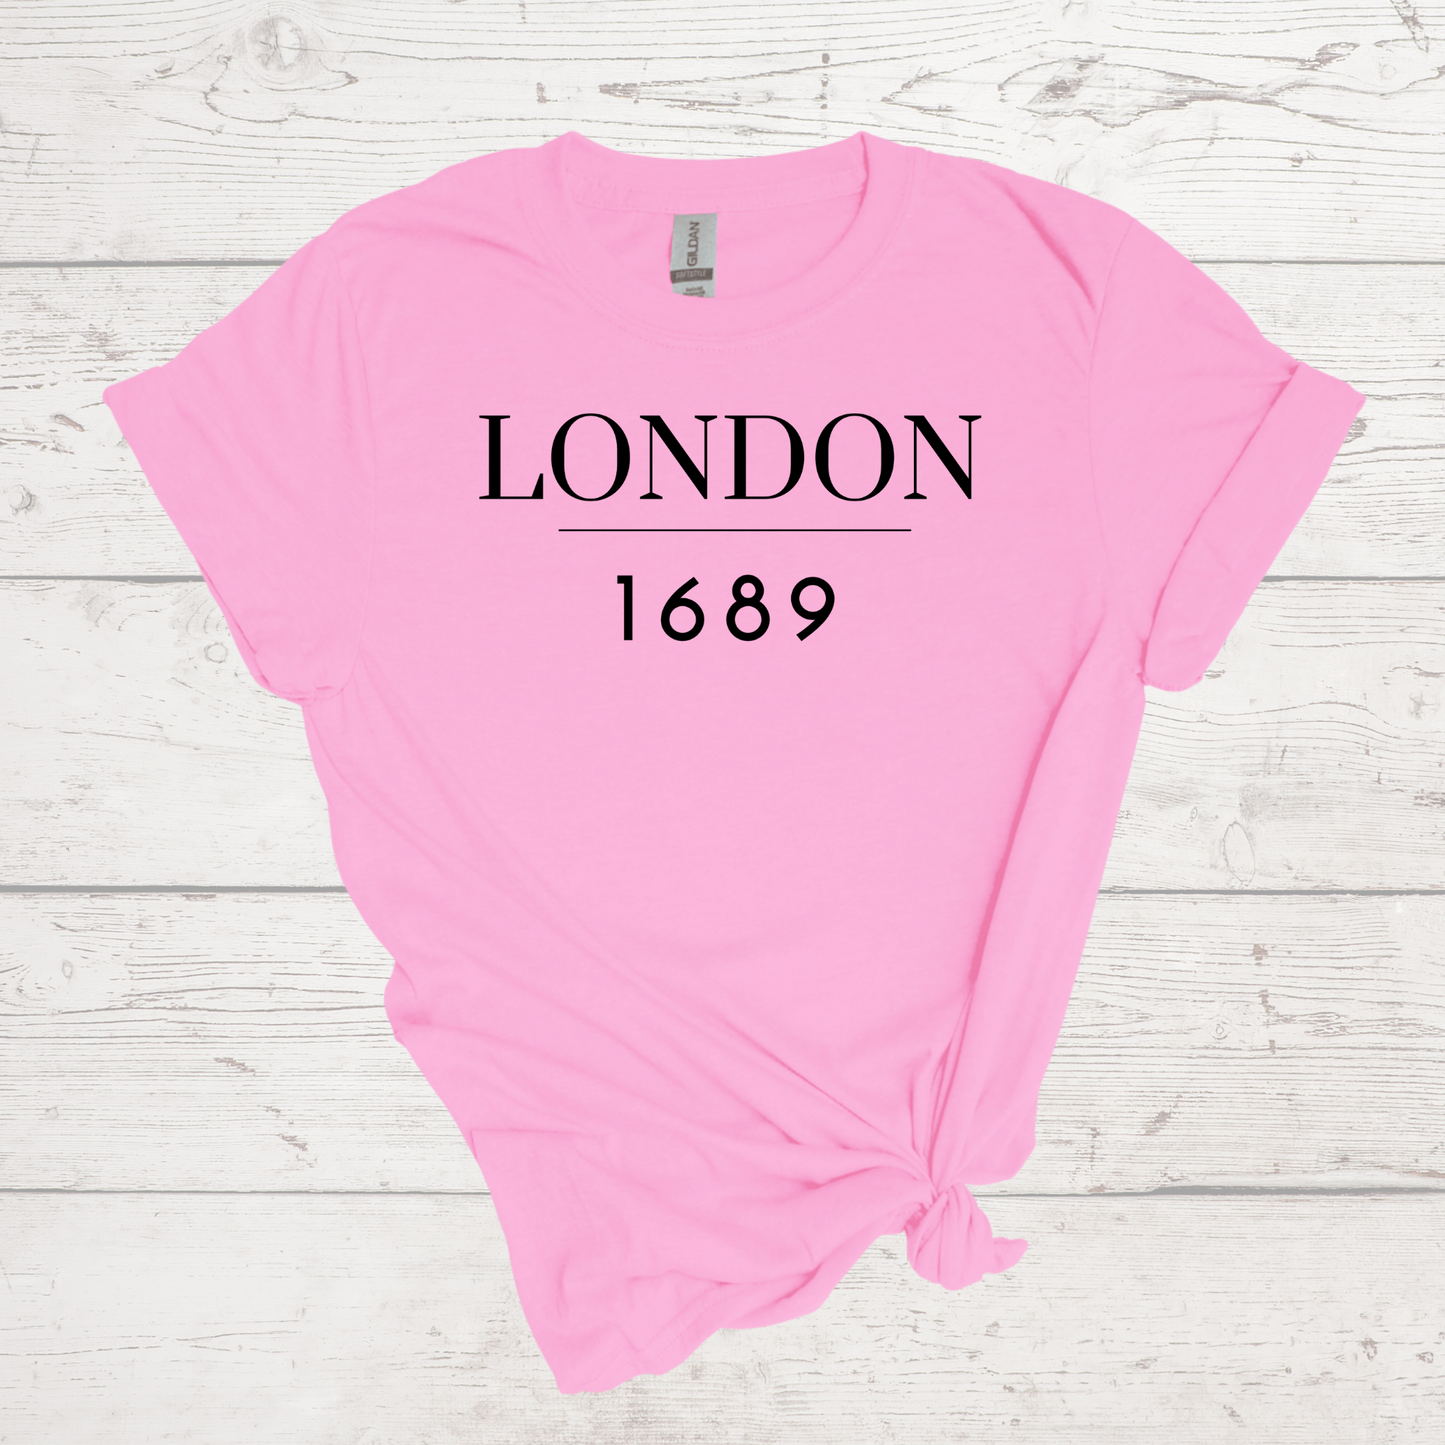 London 1689 Shirt